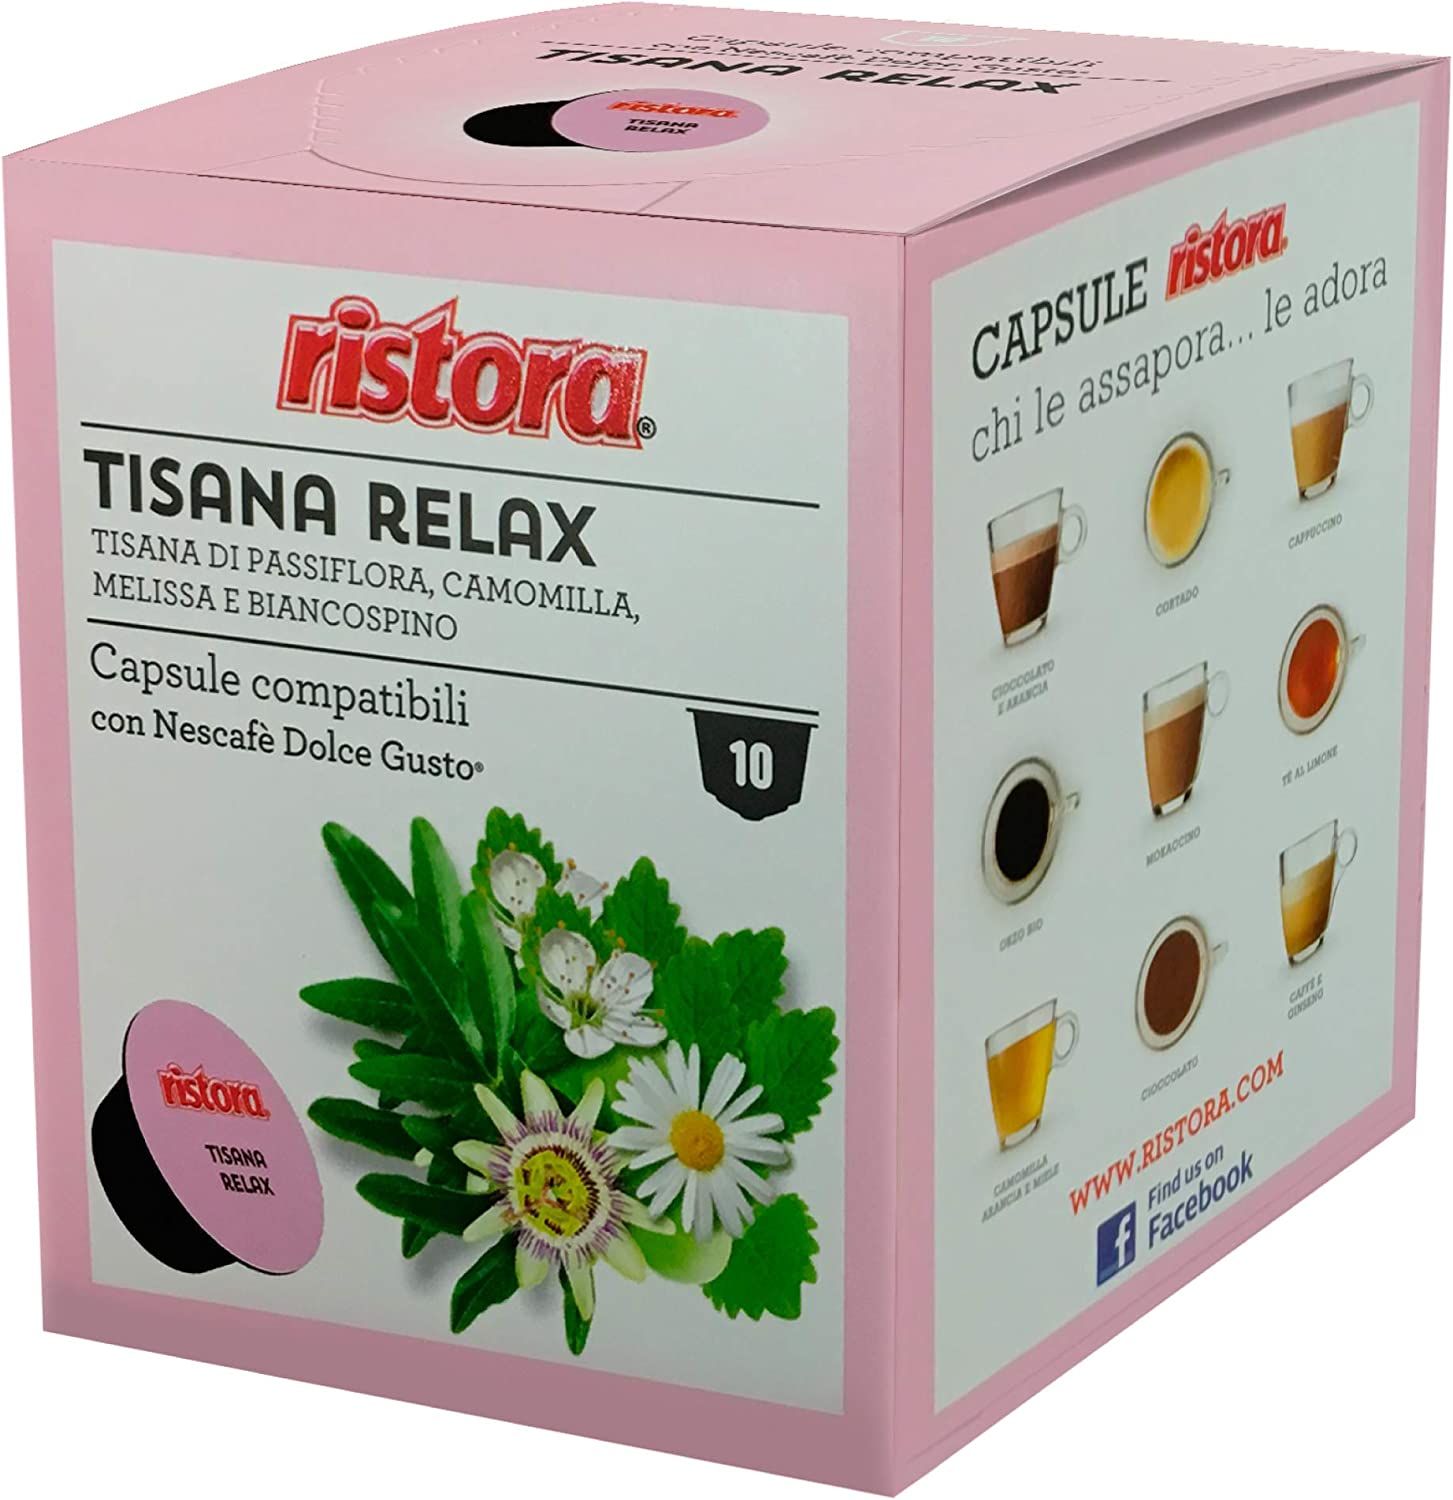 40 Capsule compatibili Nescafè Dolce Gusto Ristora Tisana Relax in